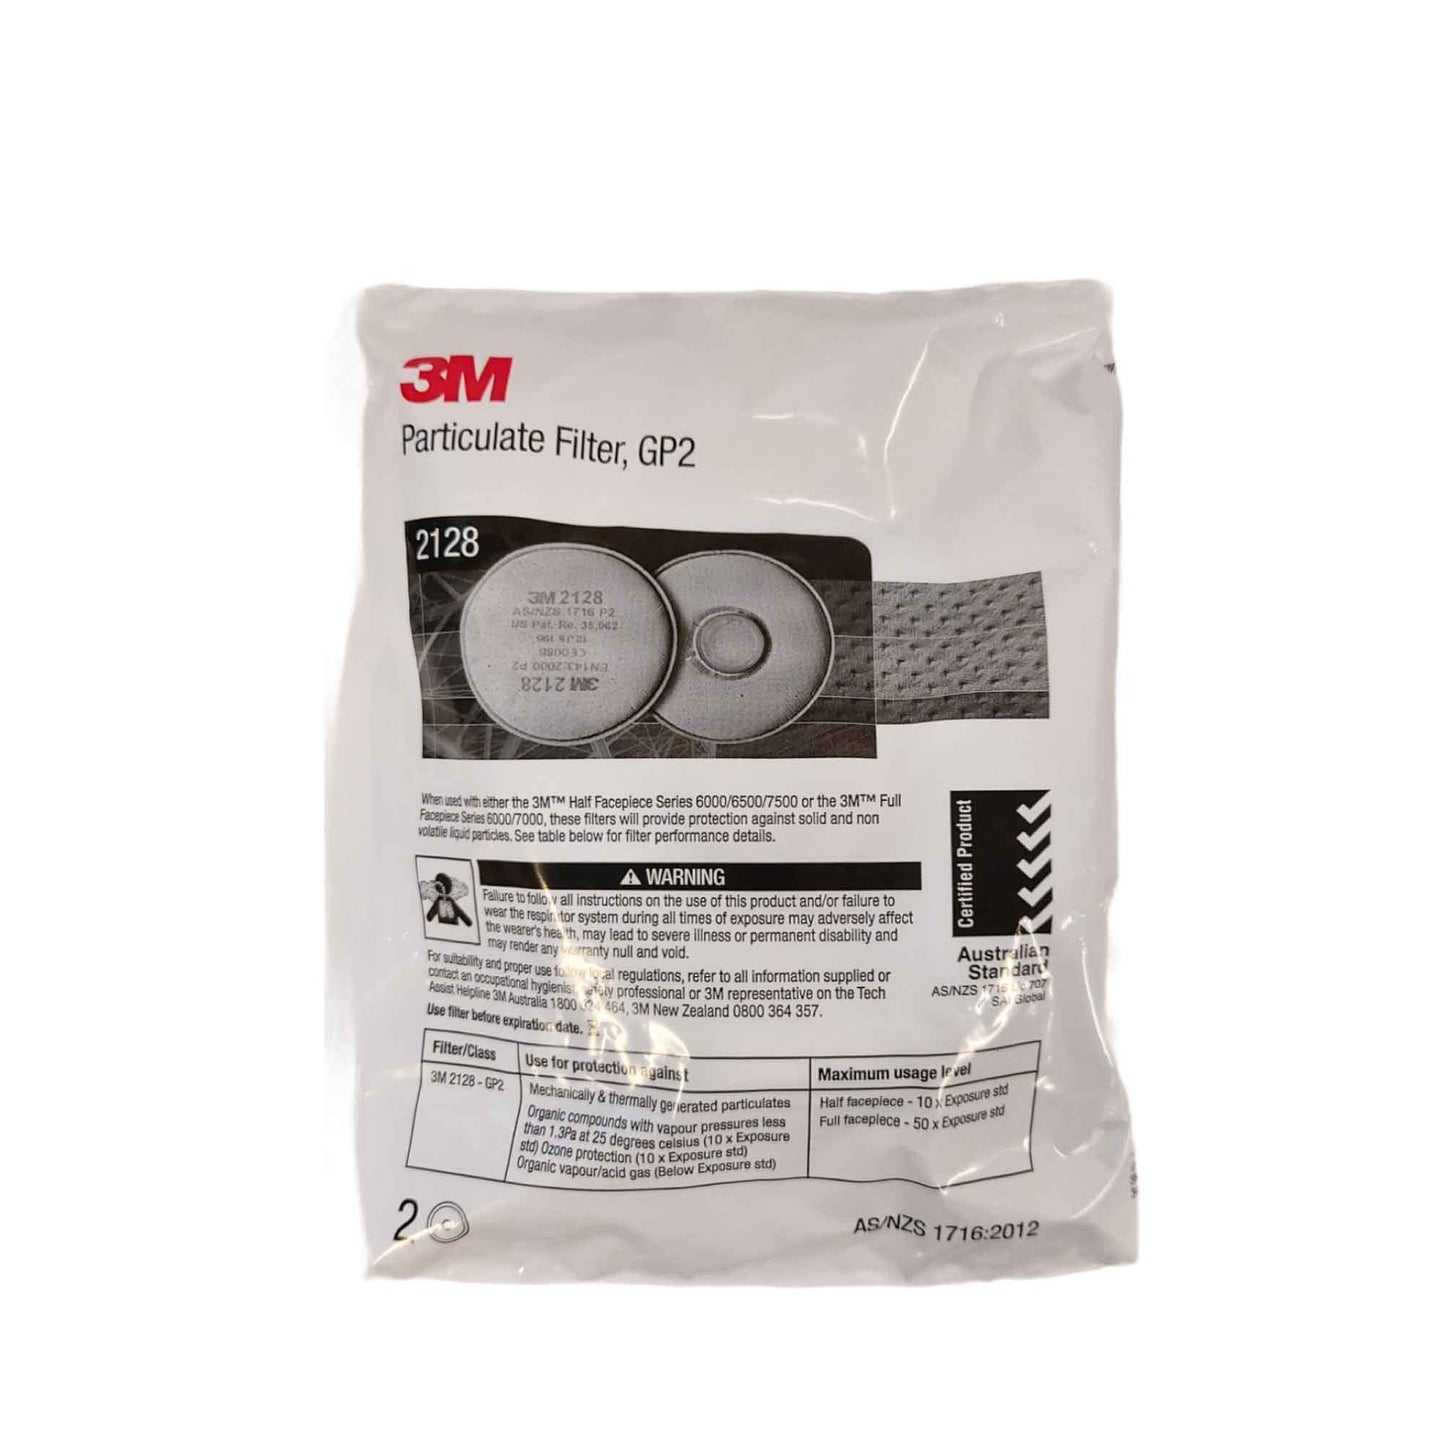 3M Welding Respirator Kit GP2 Filter Reusable Half Face Fume Mask Medium 6000